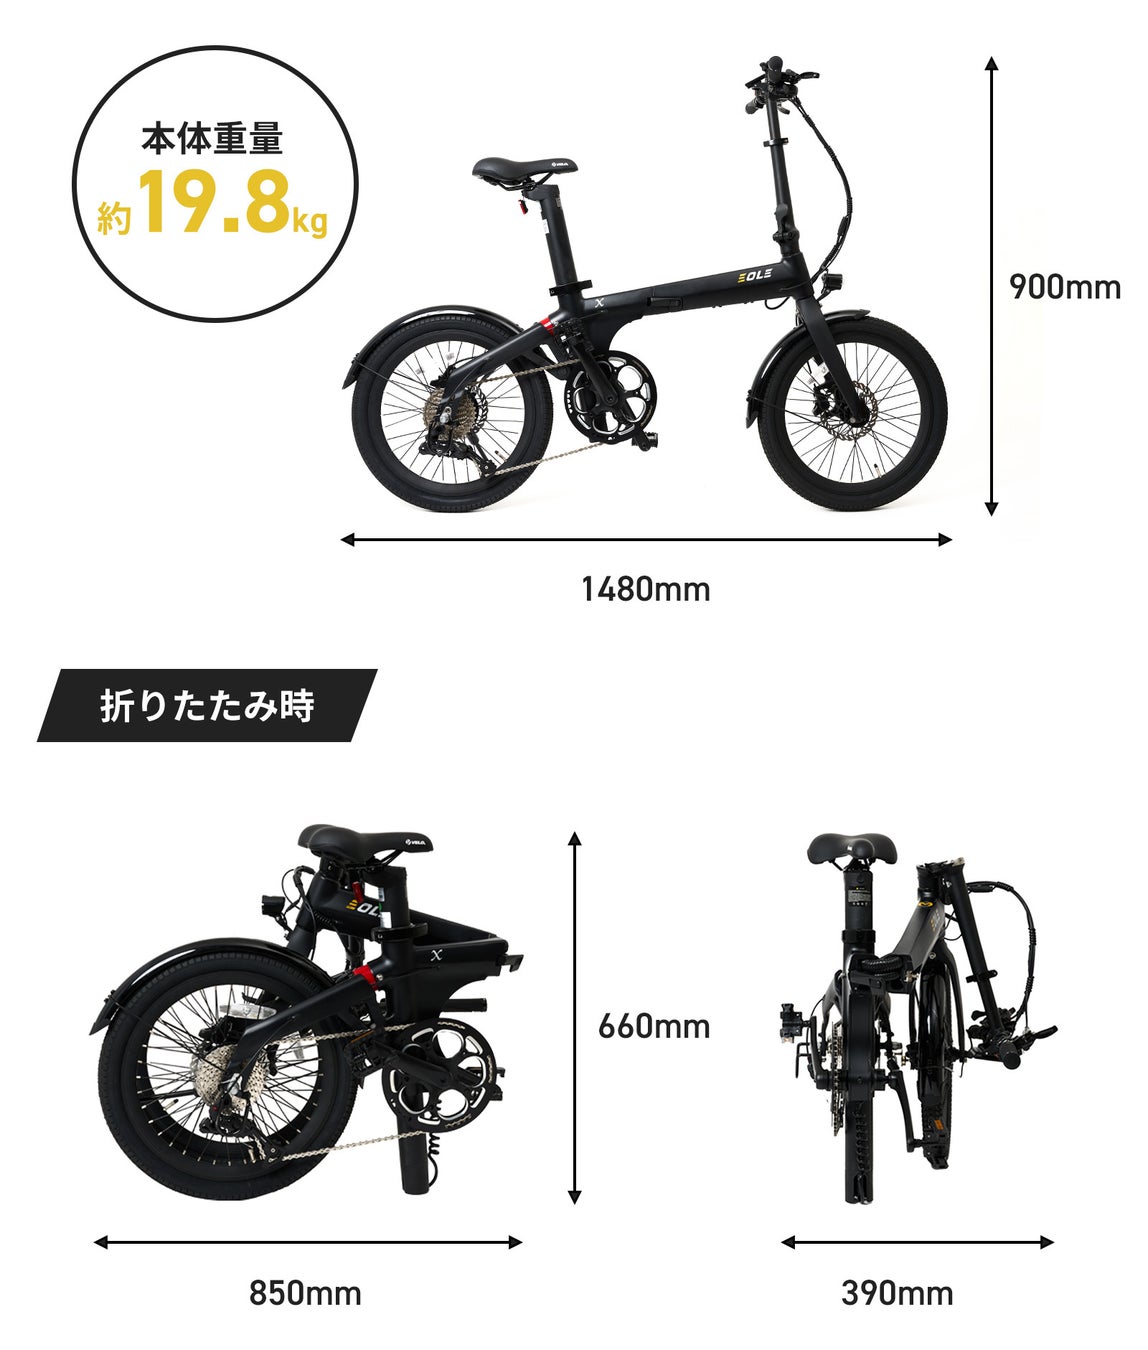 今ヨーロッパで話題の美しいデザインと高性能を兼ね備えた、近未来型折り畳み電動自転車！「Morfuns EOLE X」が応援購入サイトMakuakeにて日本初登場のサブ画像7